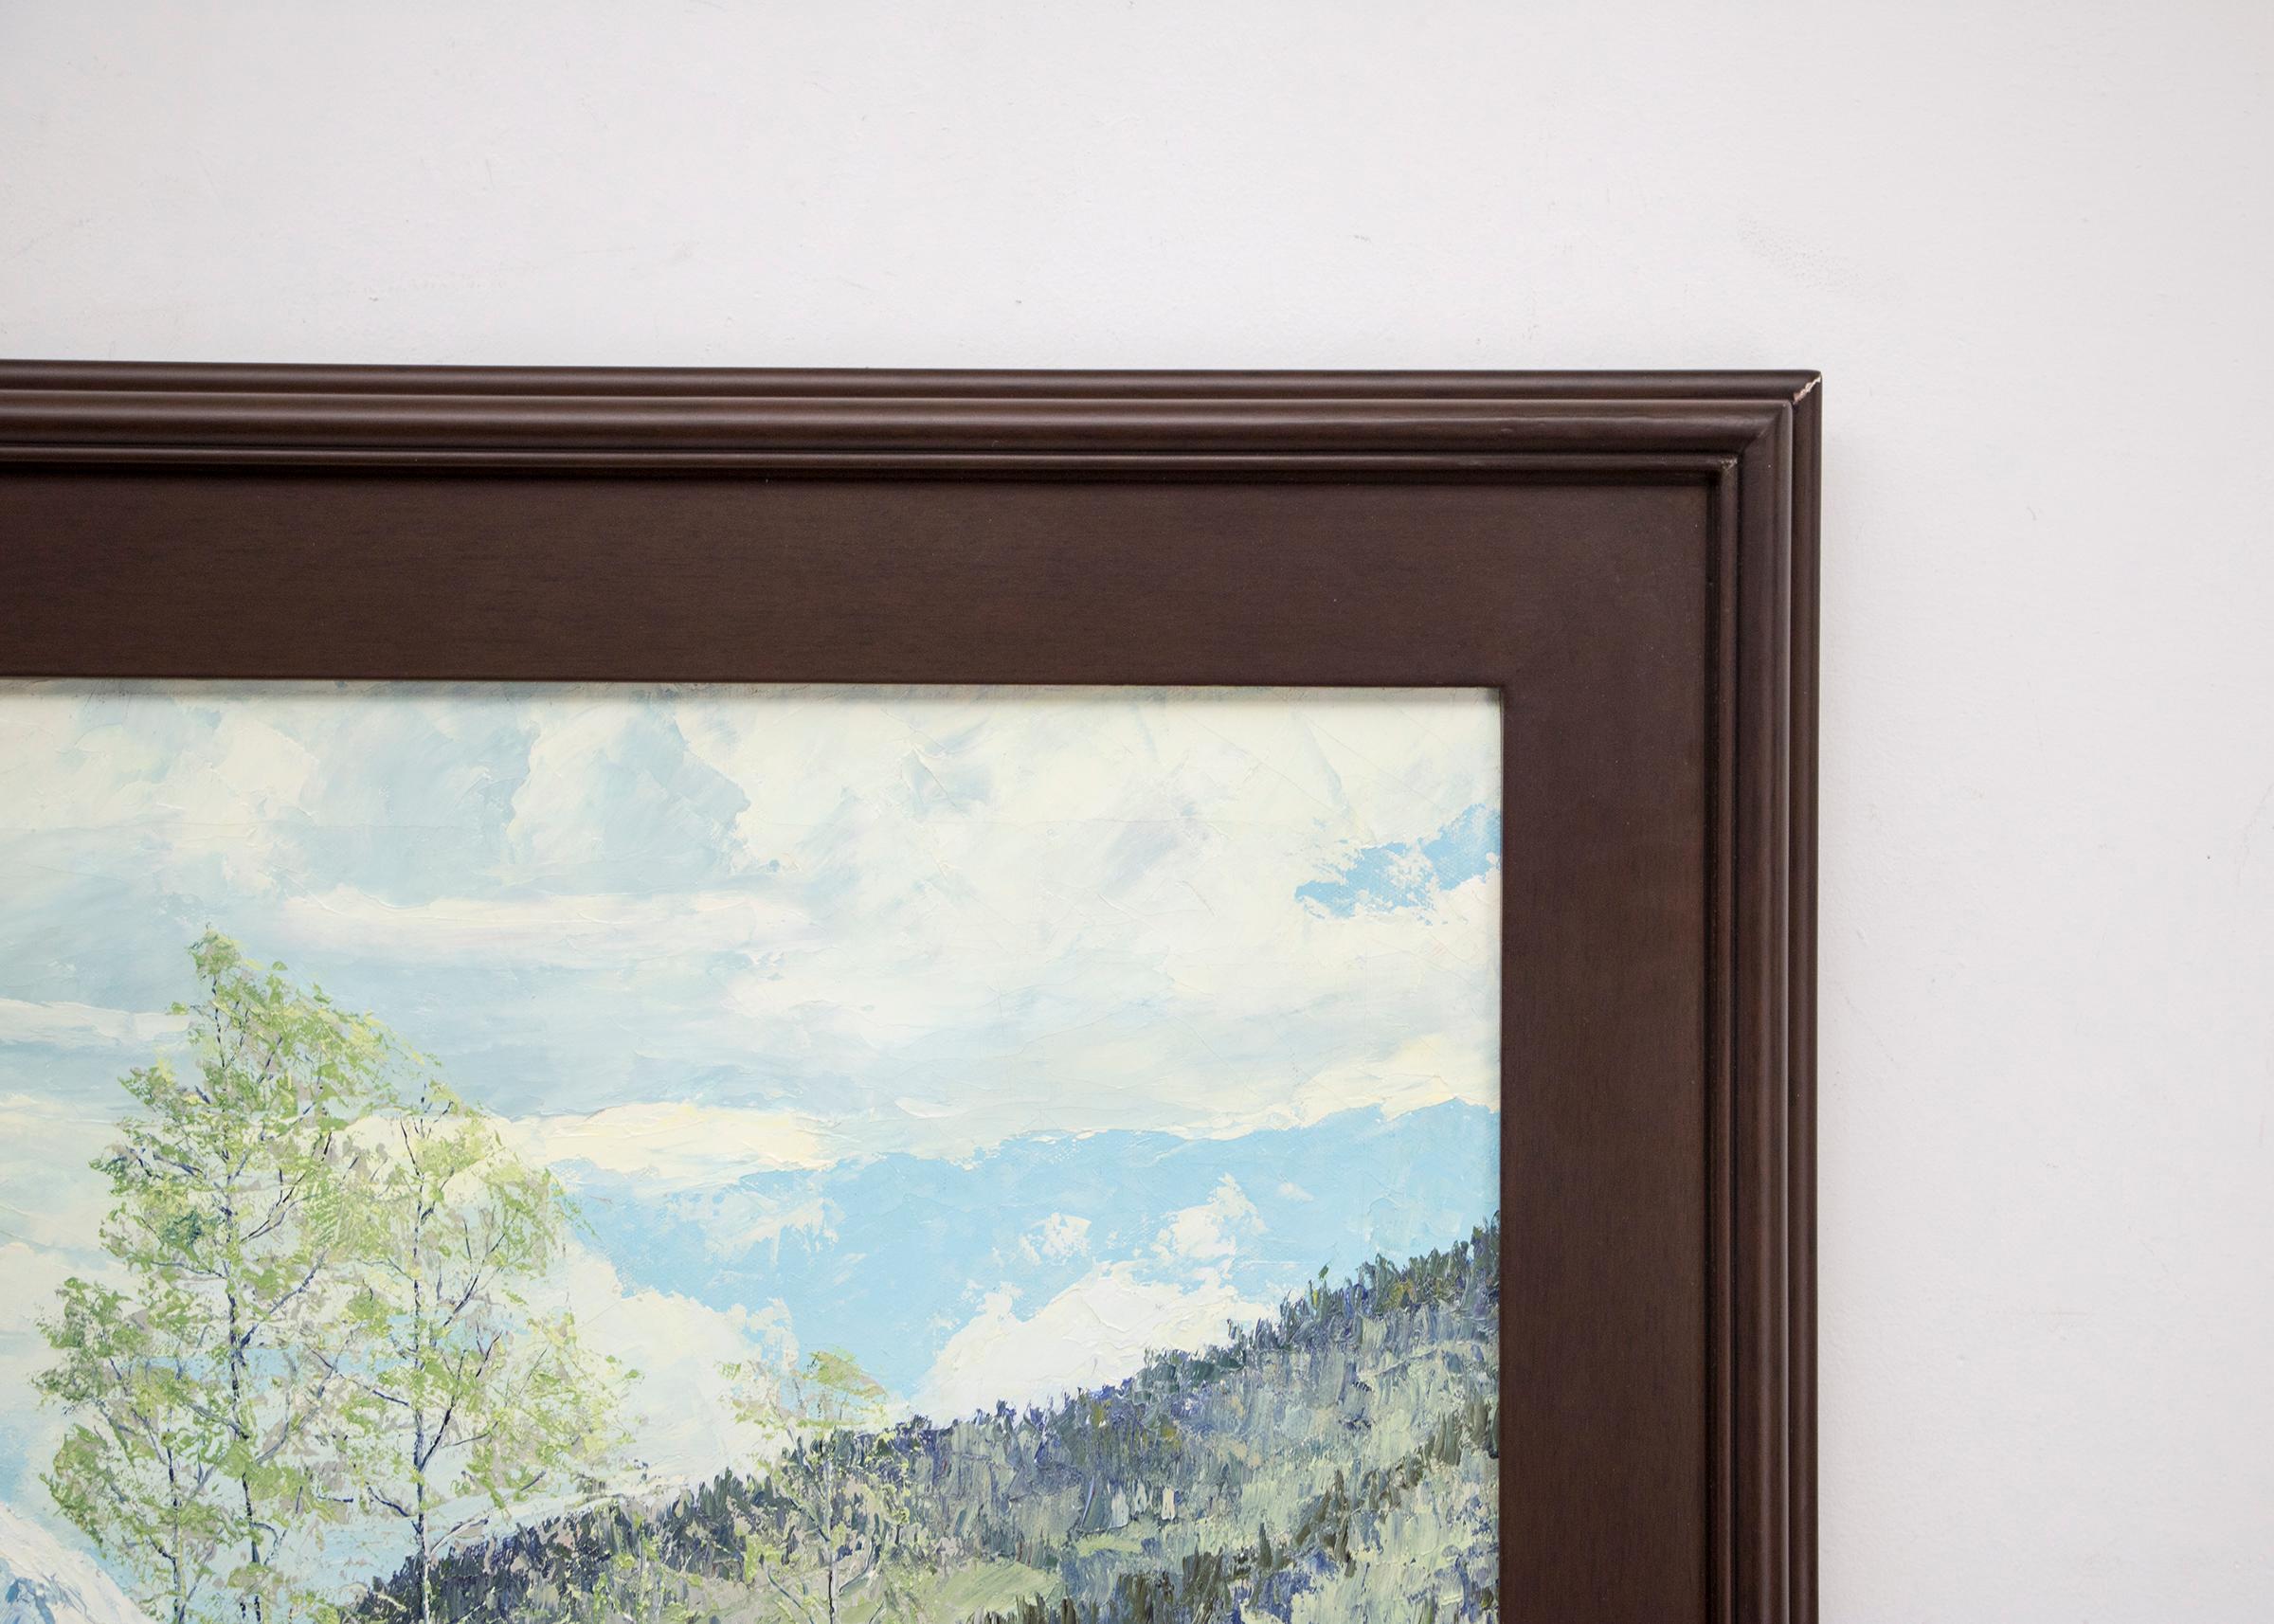 Original signiertes gerahmtes Ölgemälde im Vintage-Stil von James Emery Greer (1903-1990):: „Renewal - Grizzly Peak San Juans“:: ein Berglandschaftsgemälde aus Colorado mit grünem Gras und neuen Knospen auf den Aspenbäumen:: Evergreen-Bäumen und